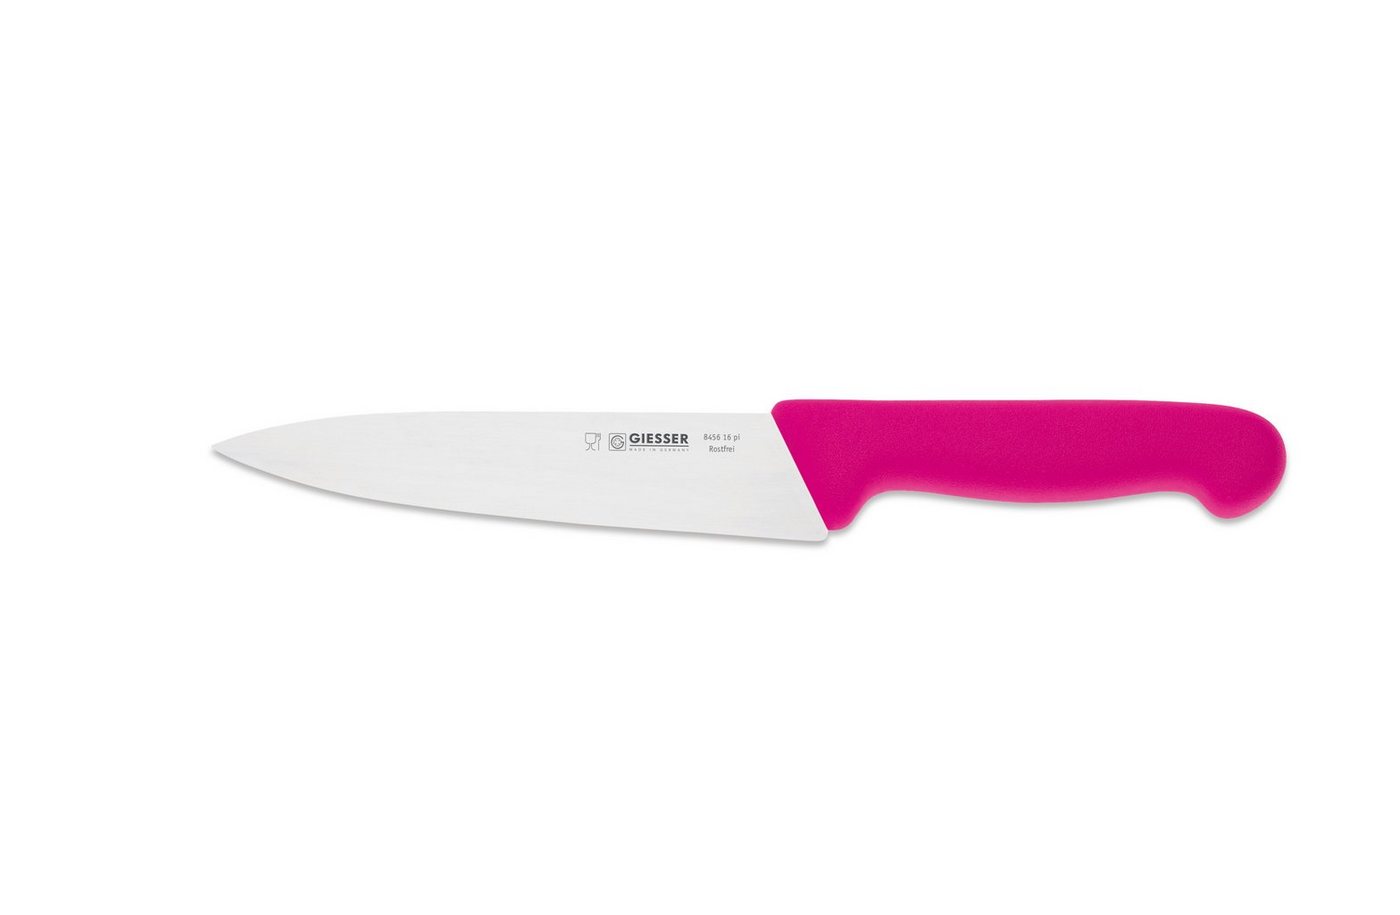 Giesser Messer Kochmesser Küchenmesser 8456, schmale, mittelspitze Klinge, scharf Handabzug, Ideal für jede Küche von Giesser Messer